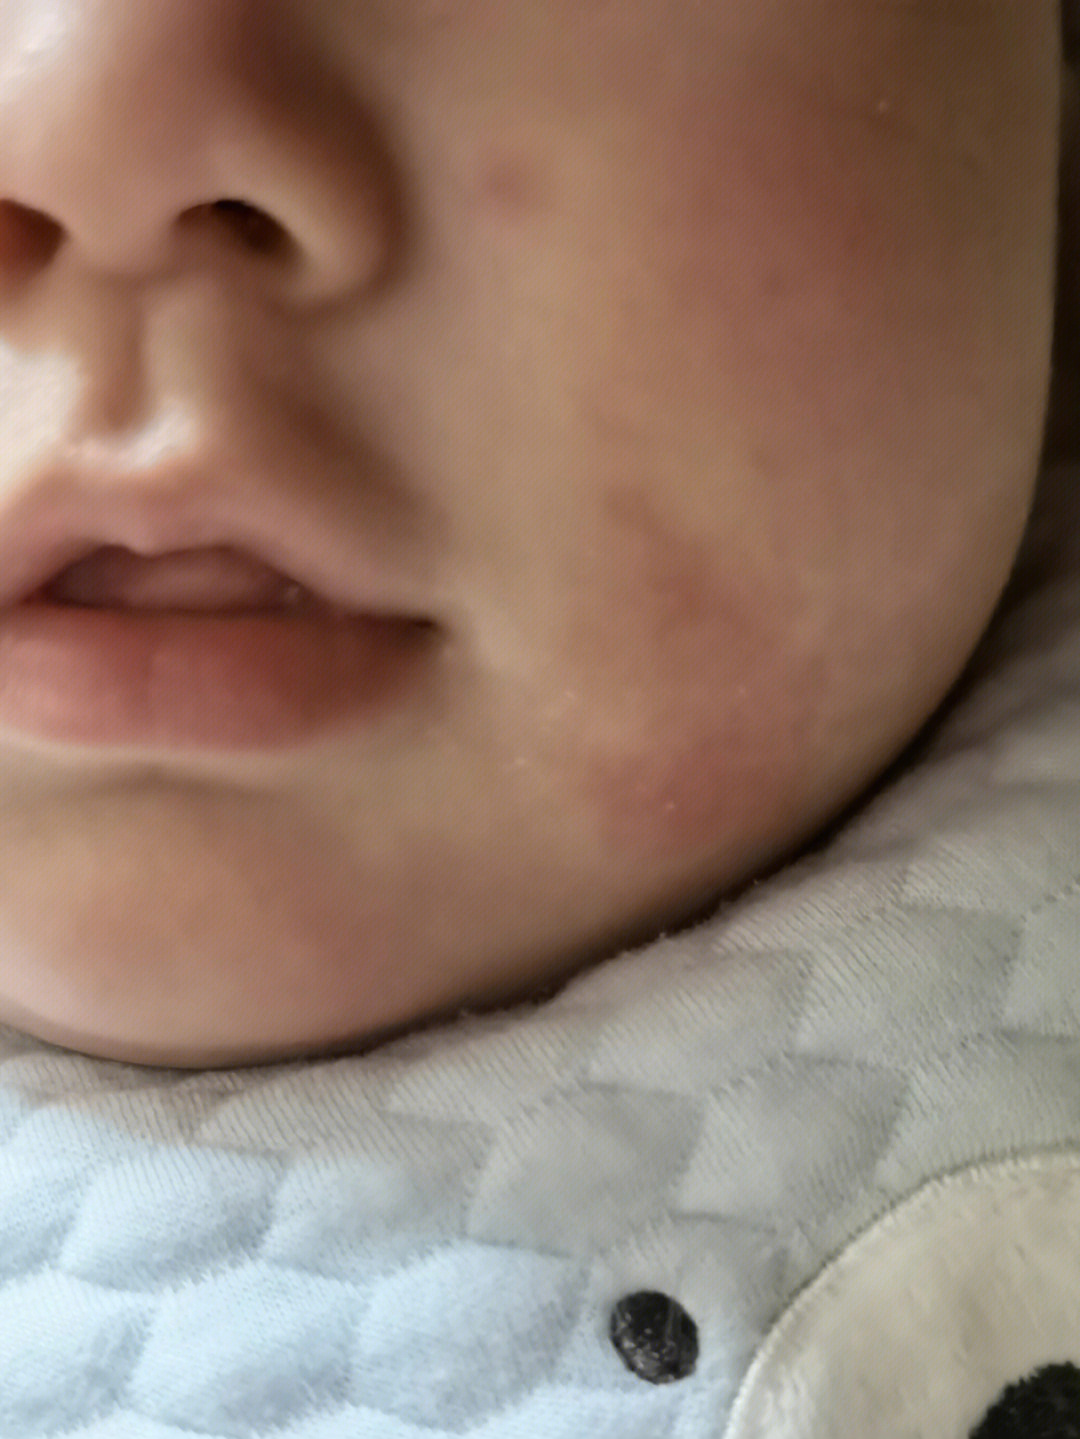 婴儿脸上长湿疹怎么治图片